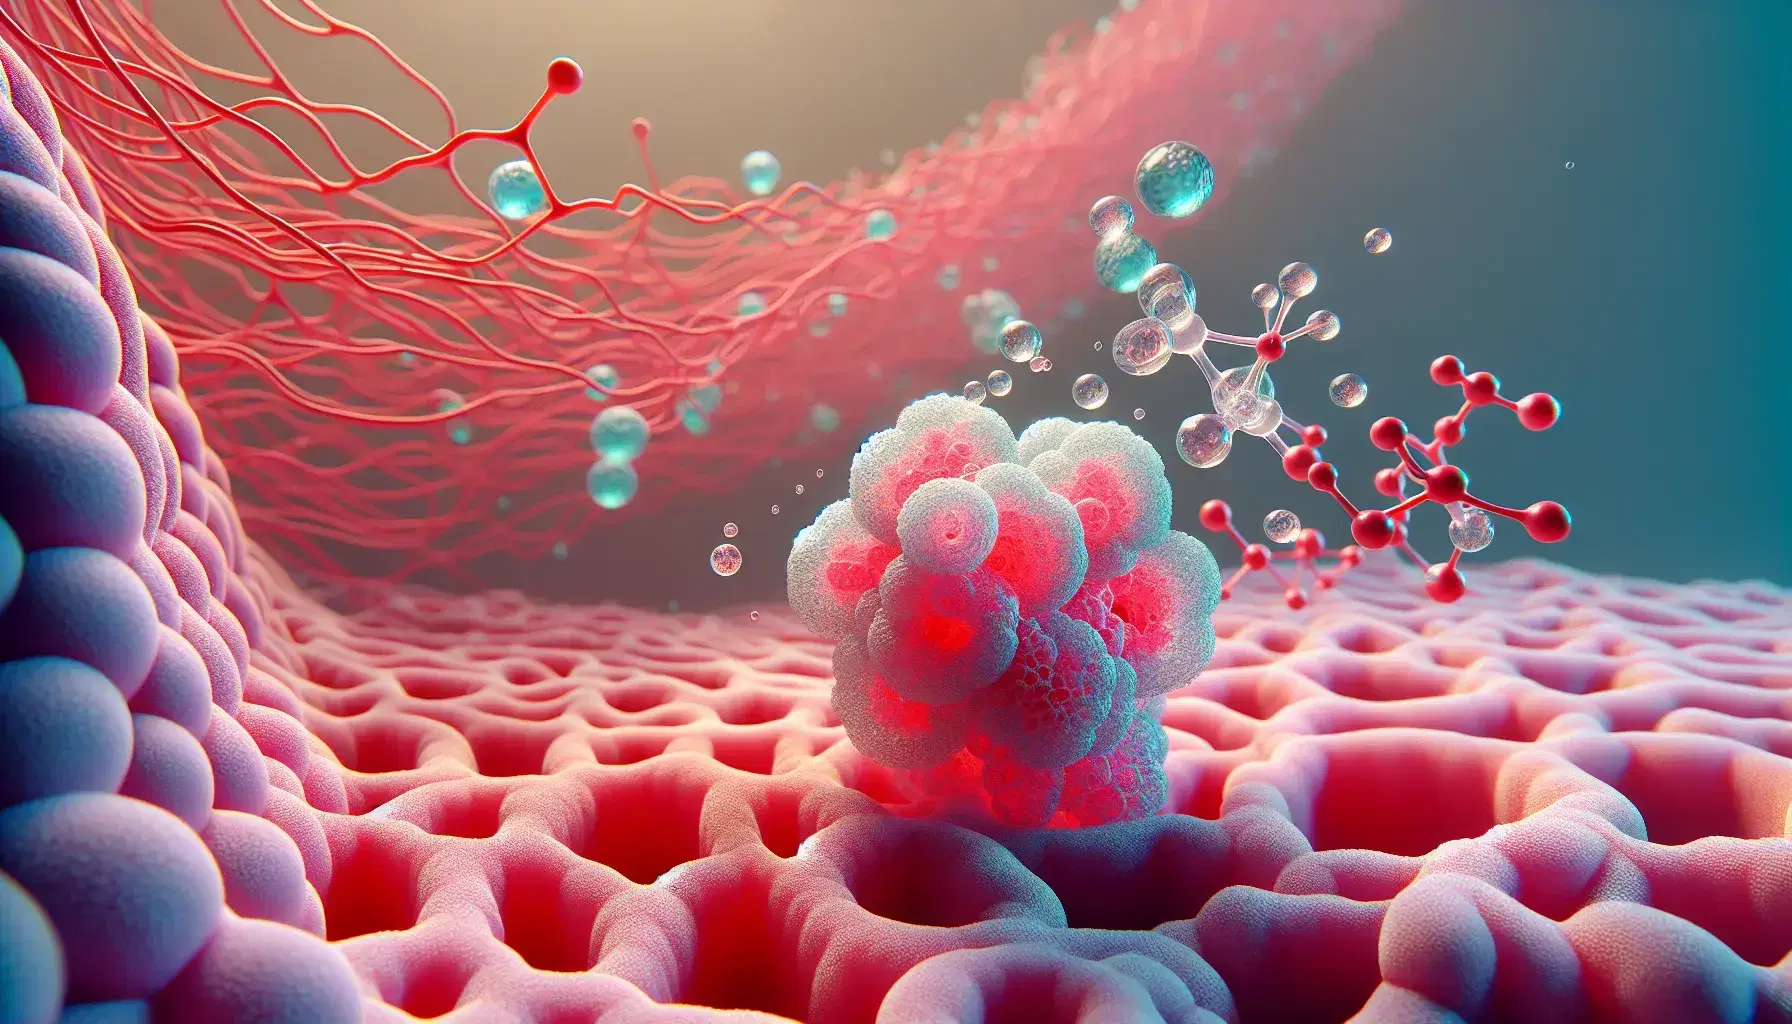 Primer plano de una superficie esponjosa rosa que simula alvéolos pulmonares con red de capilares y moléculas de oxígeno y dióxido de carbono, ilustrando el intercambio gaseoso.